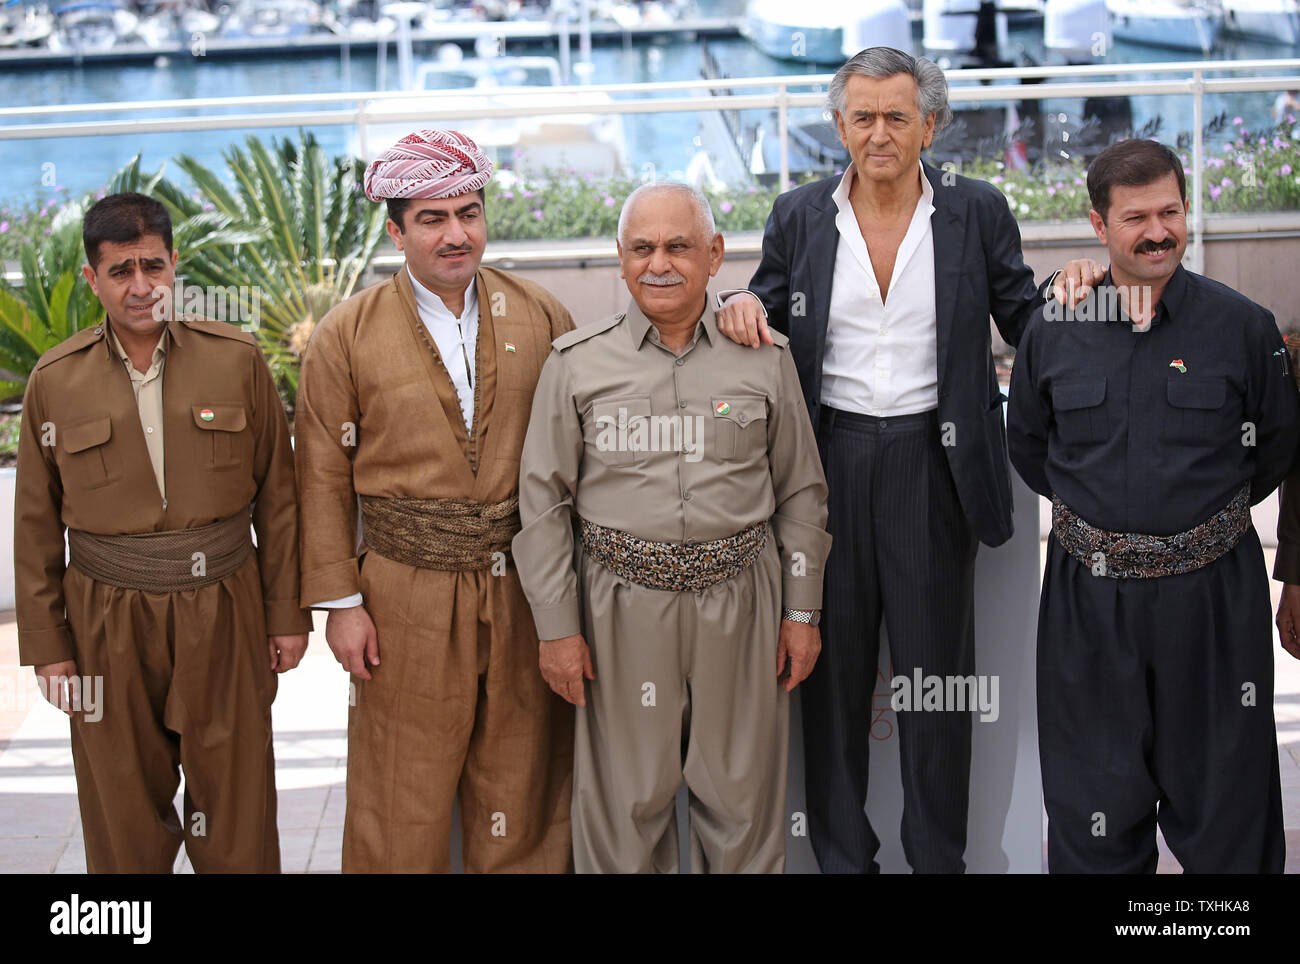 Bernard-Henri Levy (2-R) et les membres de l'Pershmega y compris le général  Barzani Sabir Serwan (2-L) et le Lieutenant-général Mustafa Ali Jaafar (C),  arriver à un photocall pour le film "peshmerga" lors